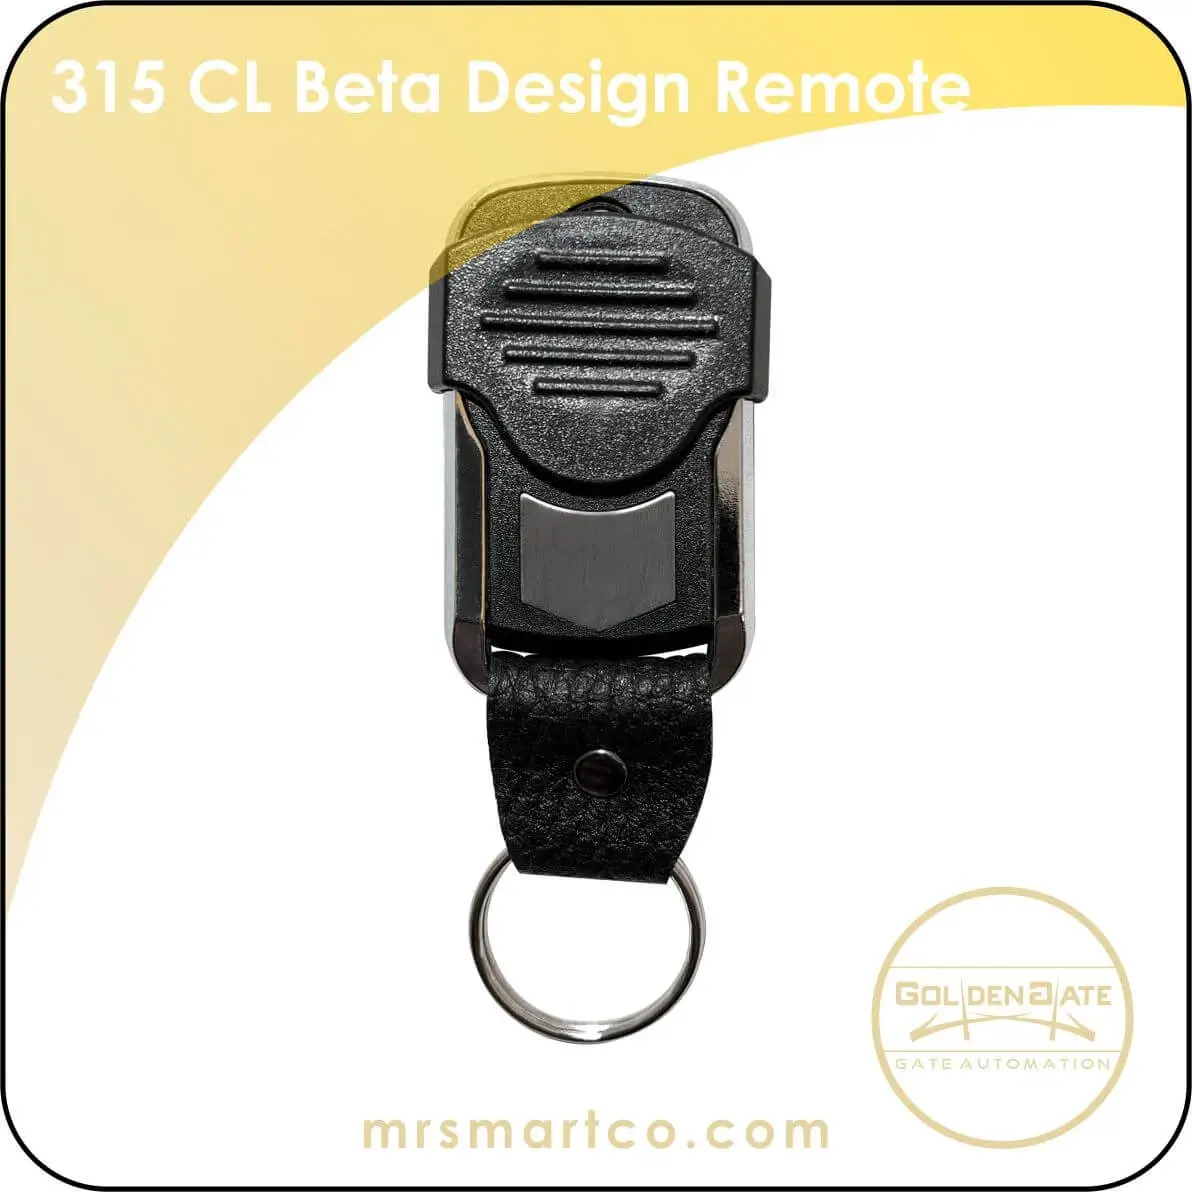 beta design remote 315 cl